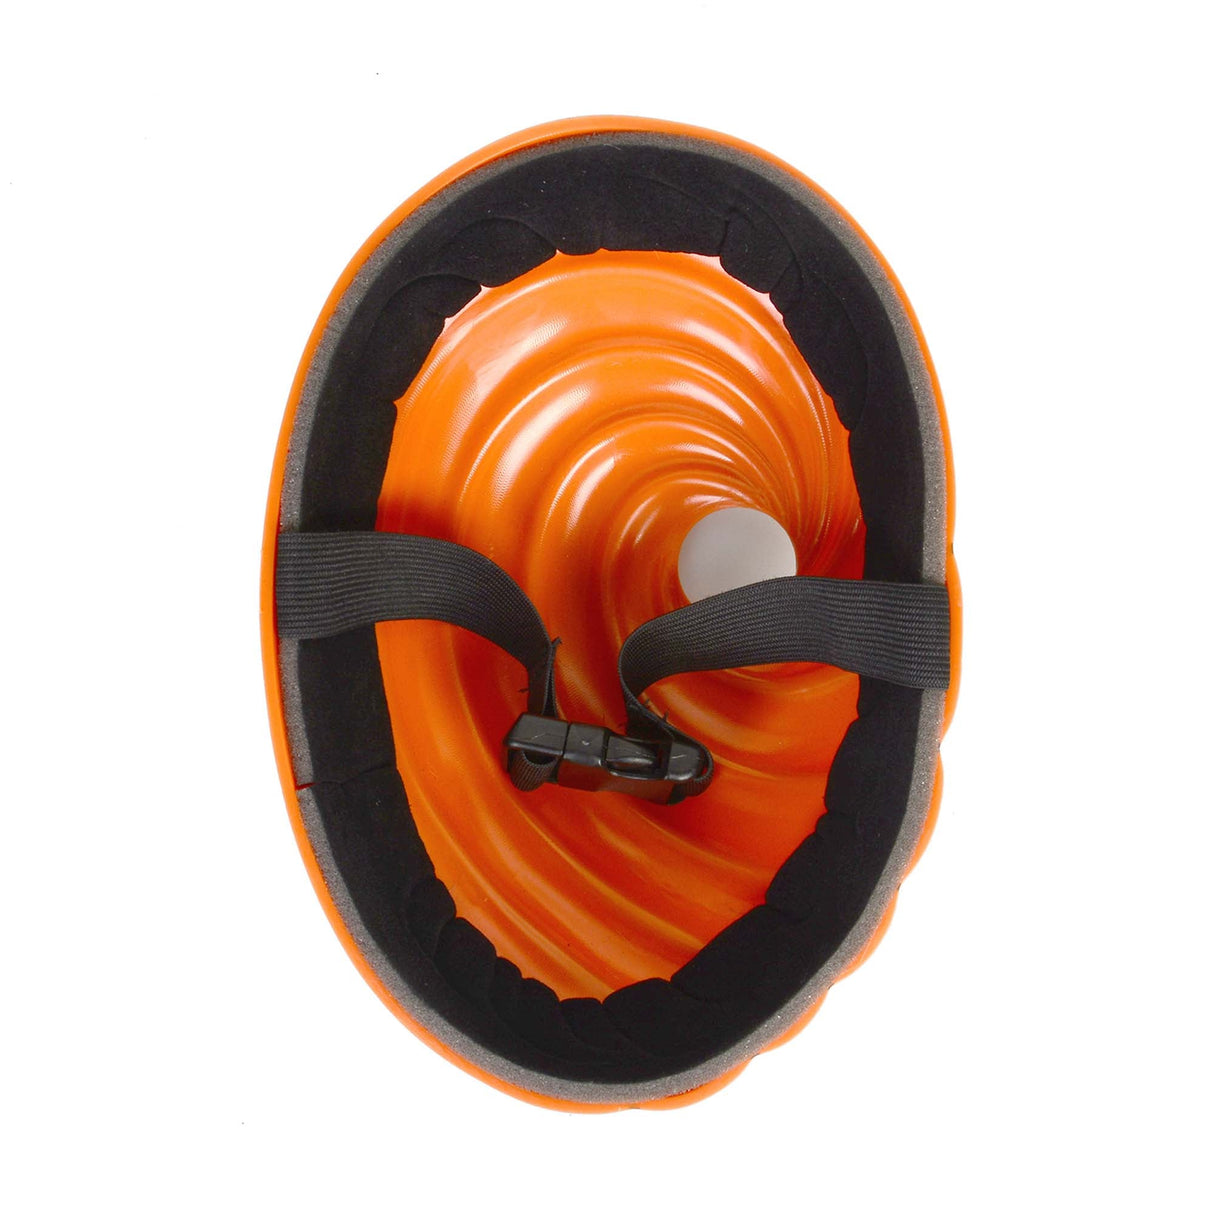 SHENZHEN PARTYGEARS DEVELOPMENT CO. LTD Costumes Accessories One Eyed Orange Spiral Anime Villain Mask, 1 Count